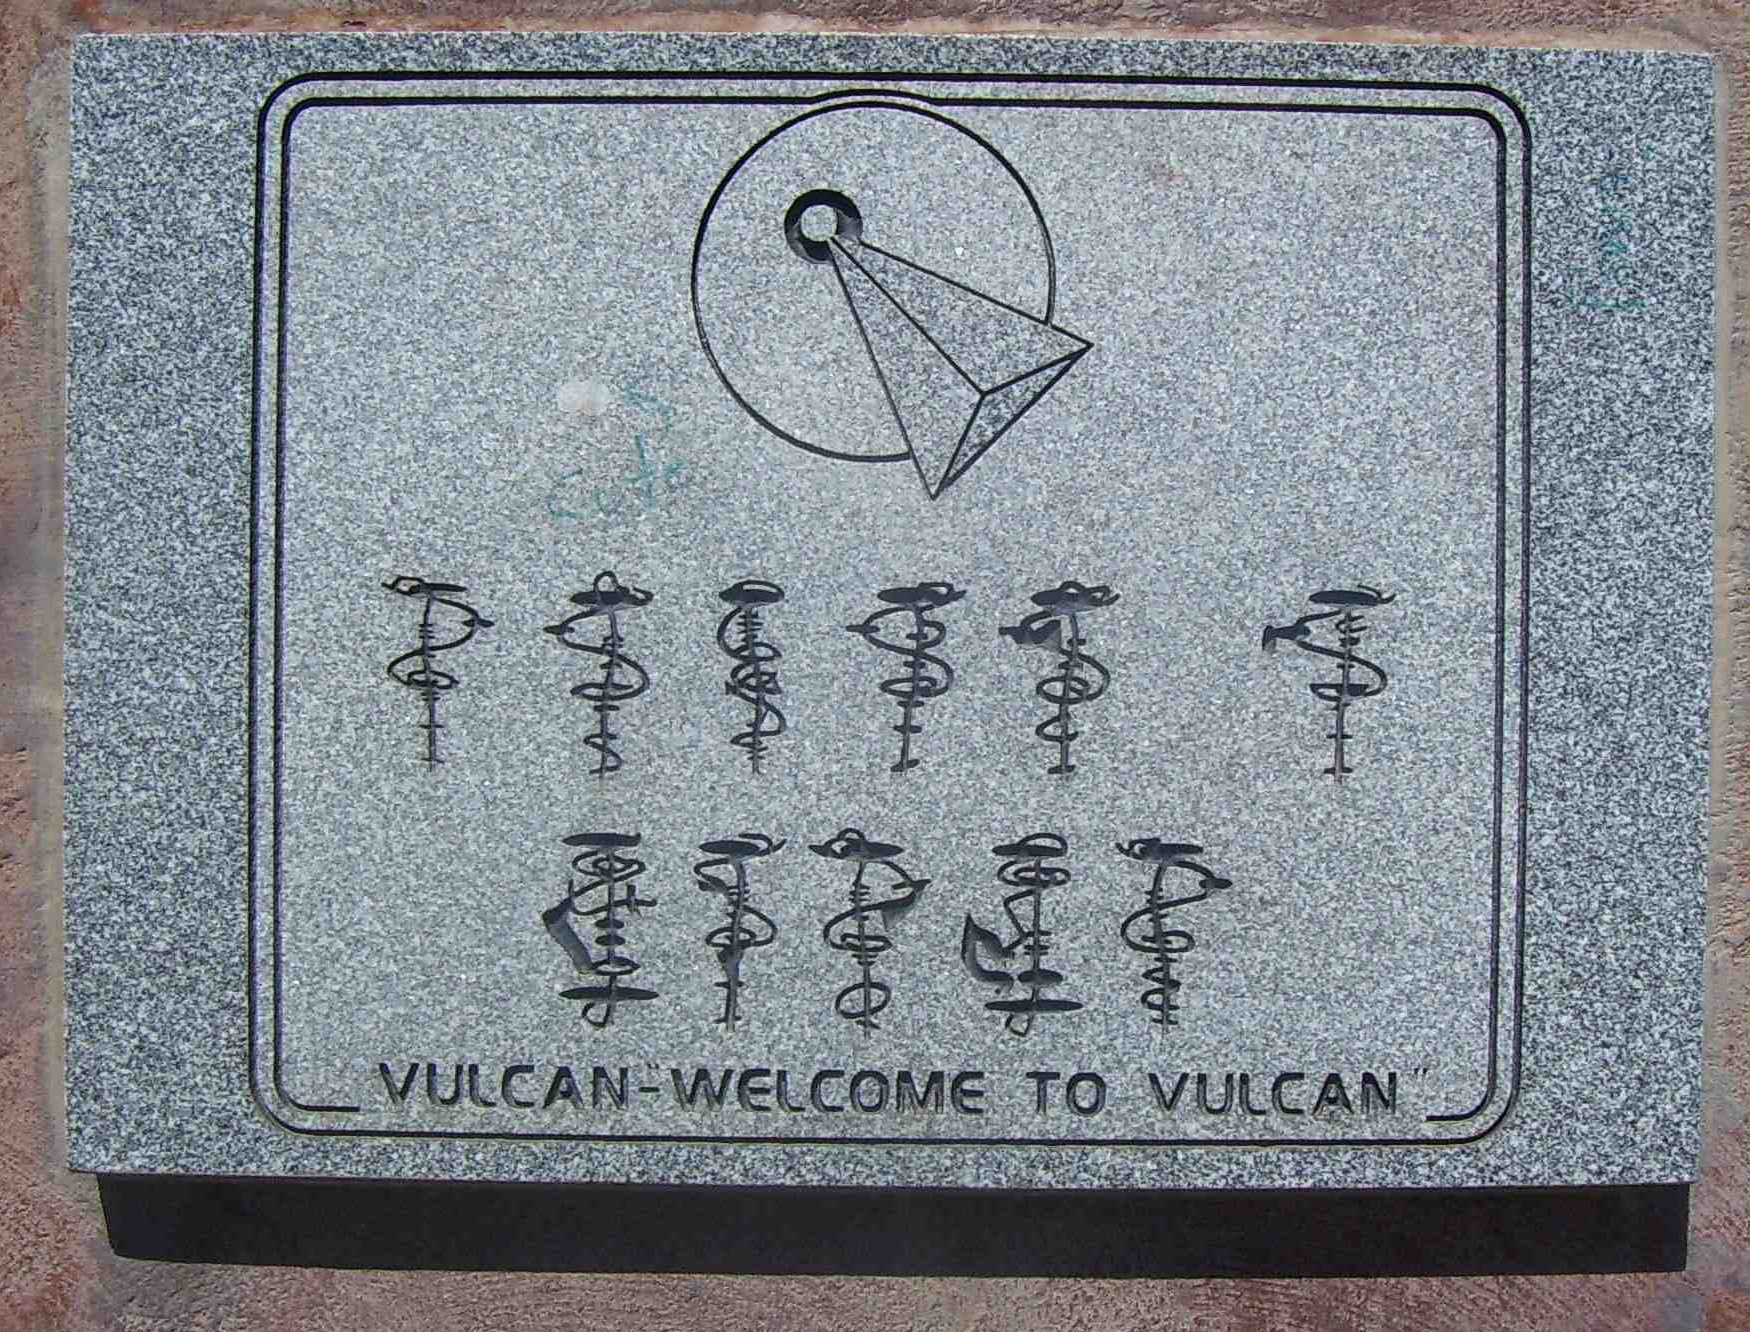 [Vulcan, Alberta]